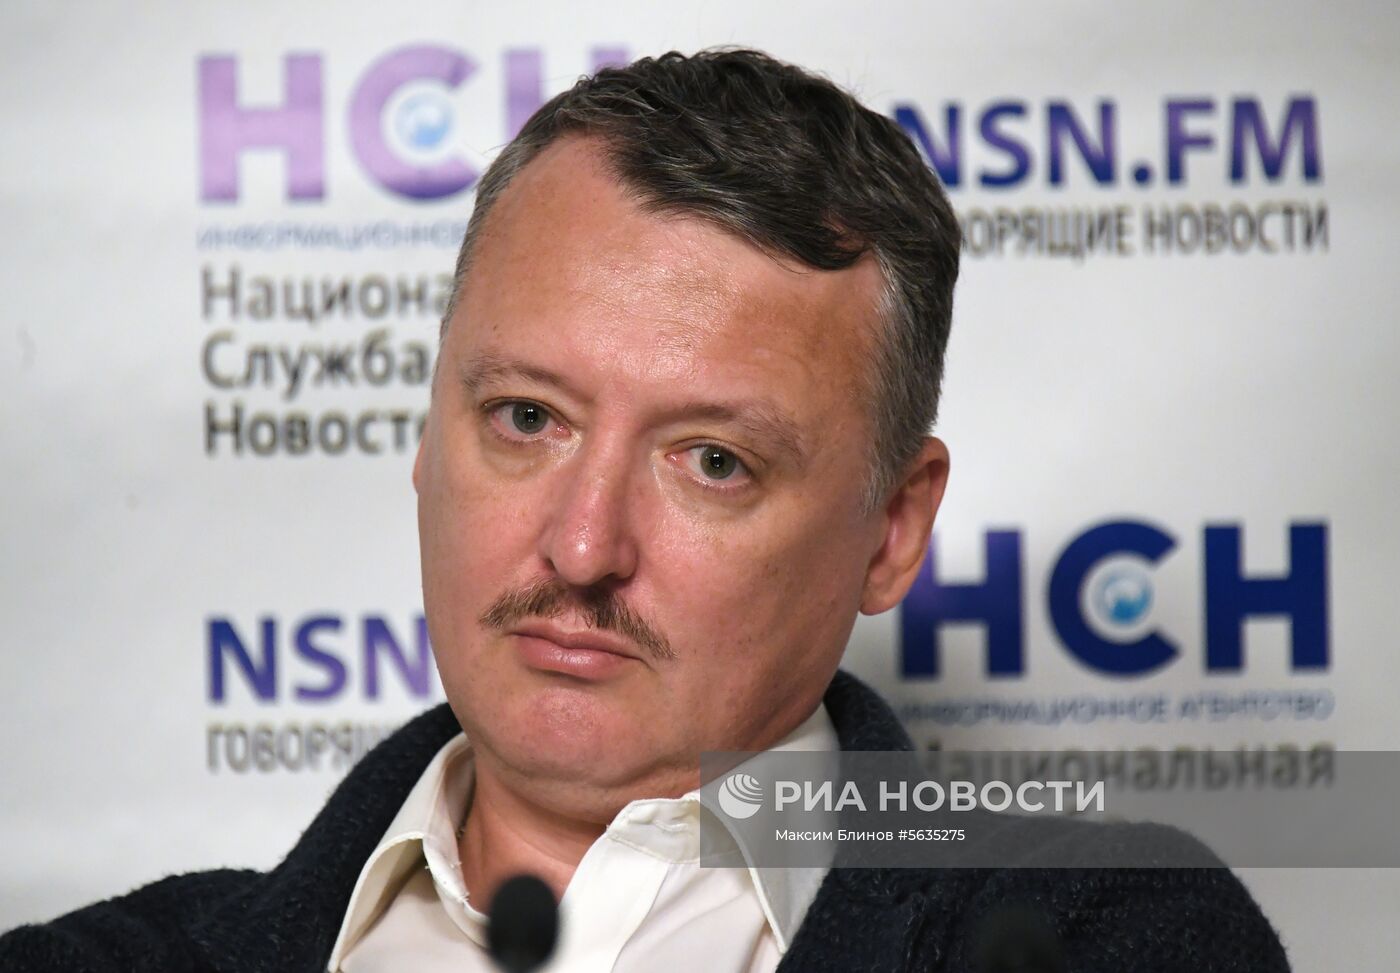 П/к на тему: "ДНР после убийства Захарченко: в чьих руках судьба Донбасса?»